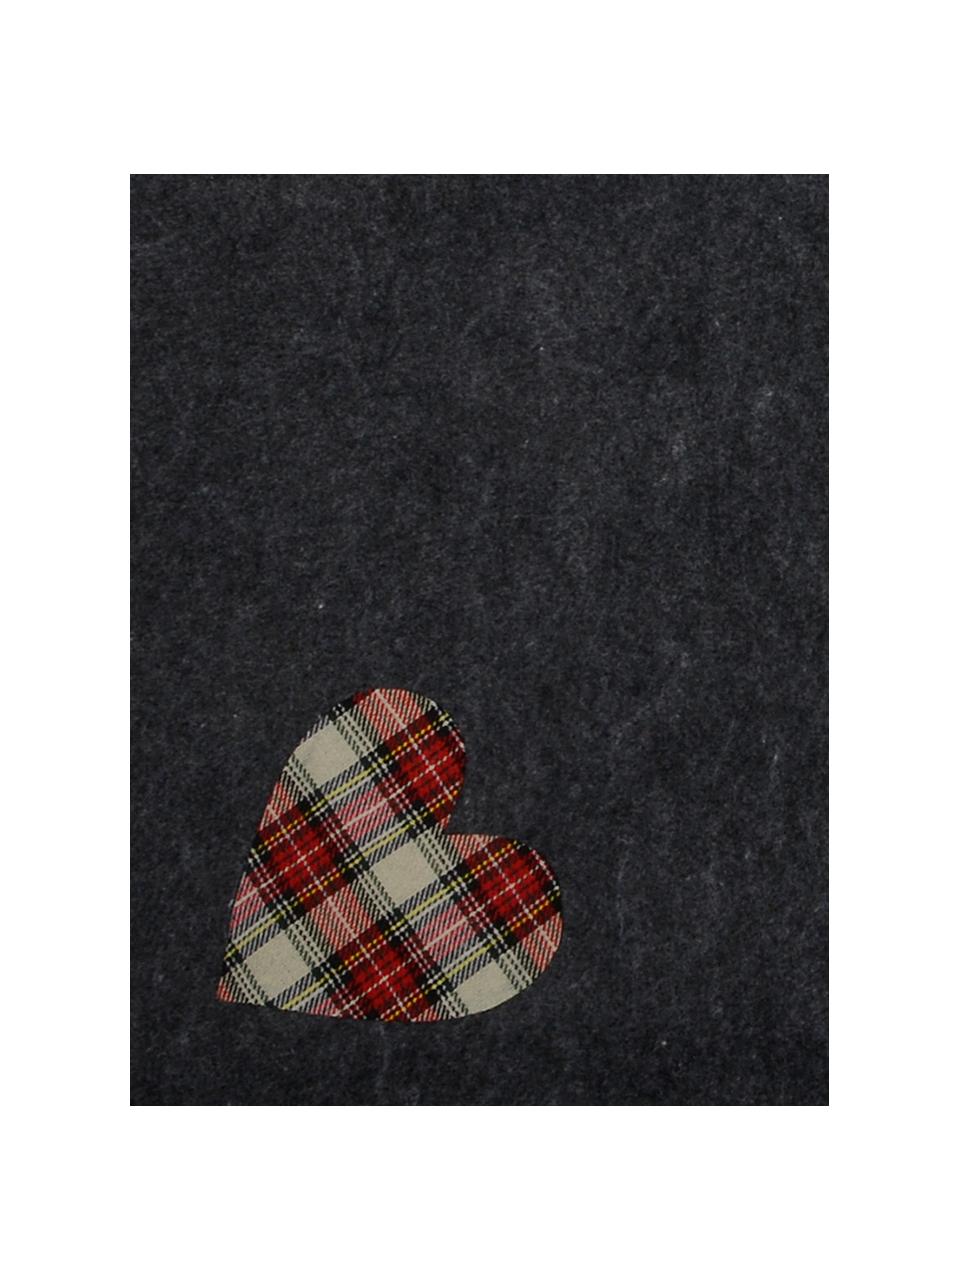 Kerstboomonderlegger Heart, Vilt, Donkergrijs, beige, rood, Ø 100 cm